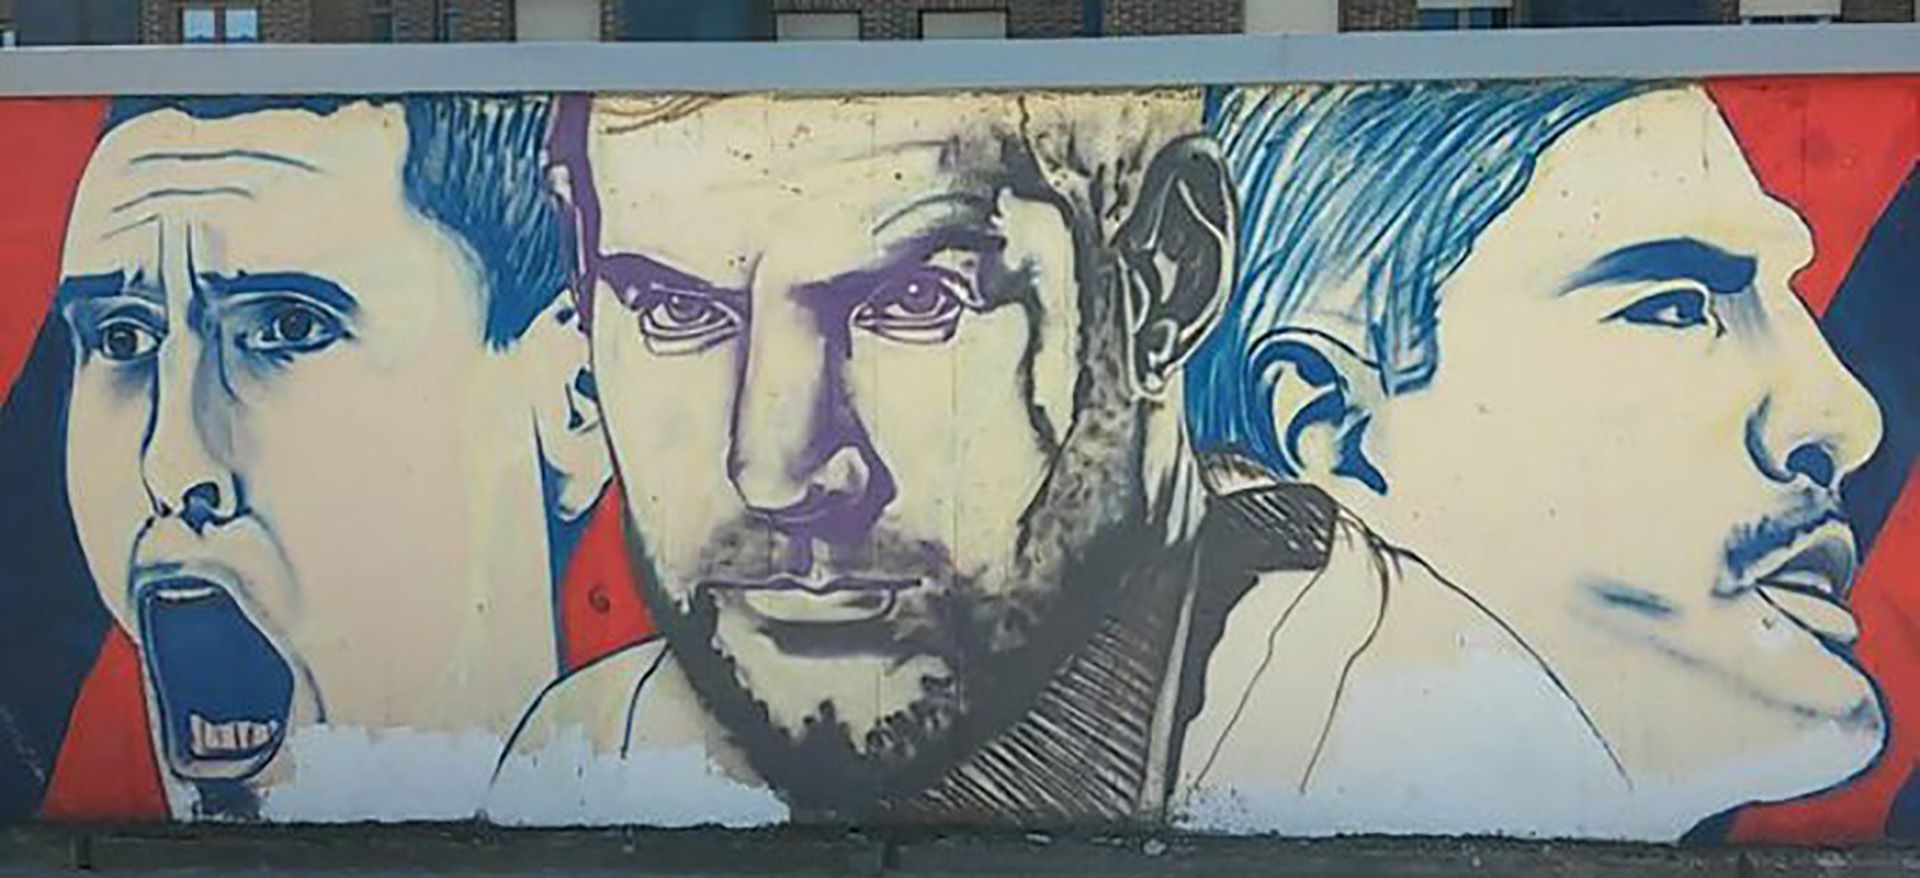 Mural con Prigioni, Nocioni y Scola, prueba de la relación entre los fanáticos del Baskonio y Argentina